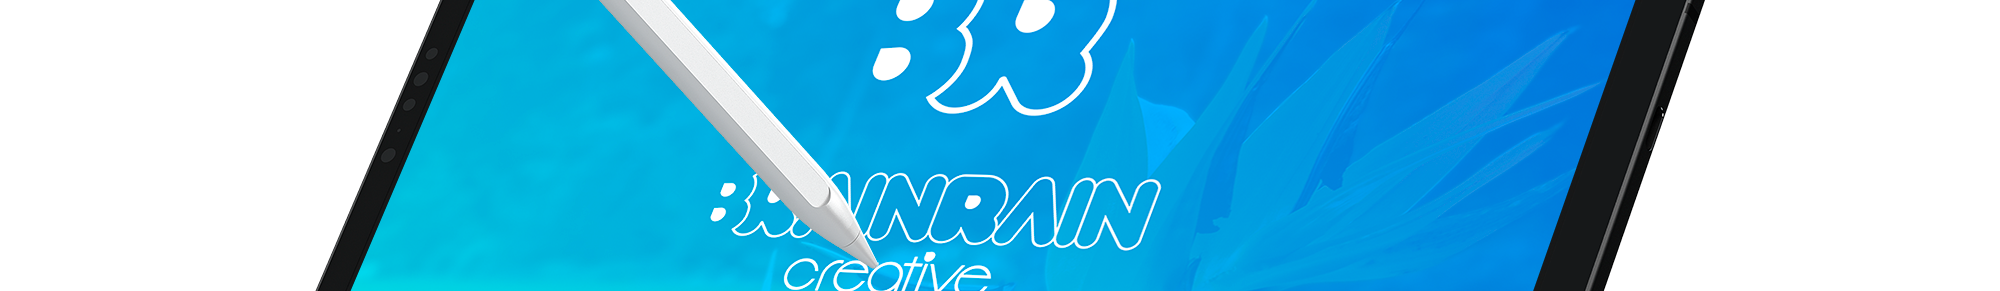 BRAINRAIN CREATIVE's profile banner